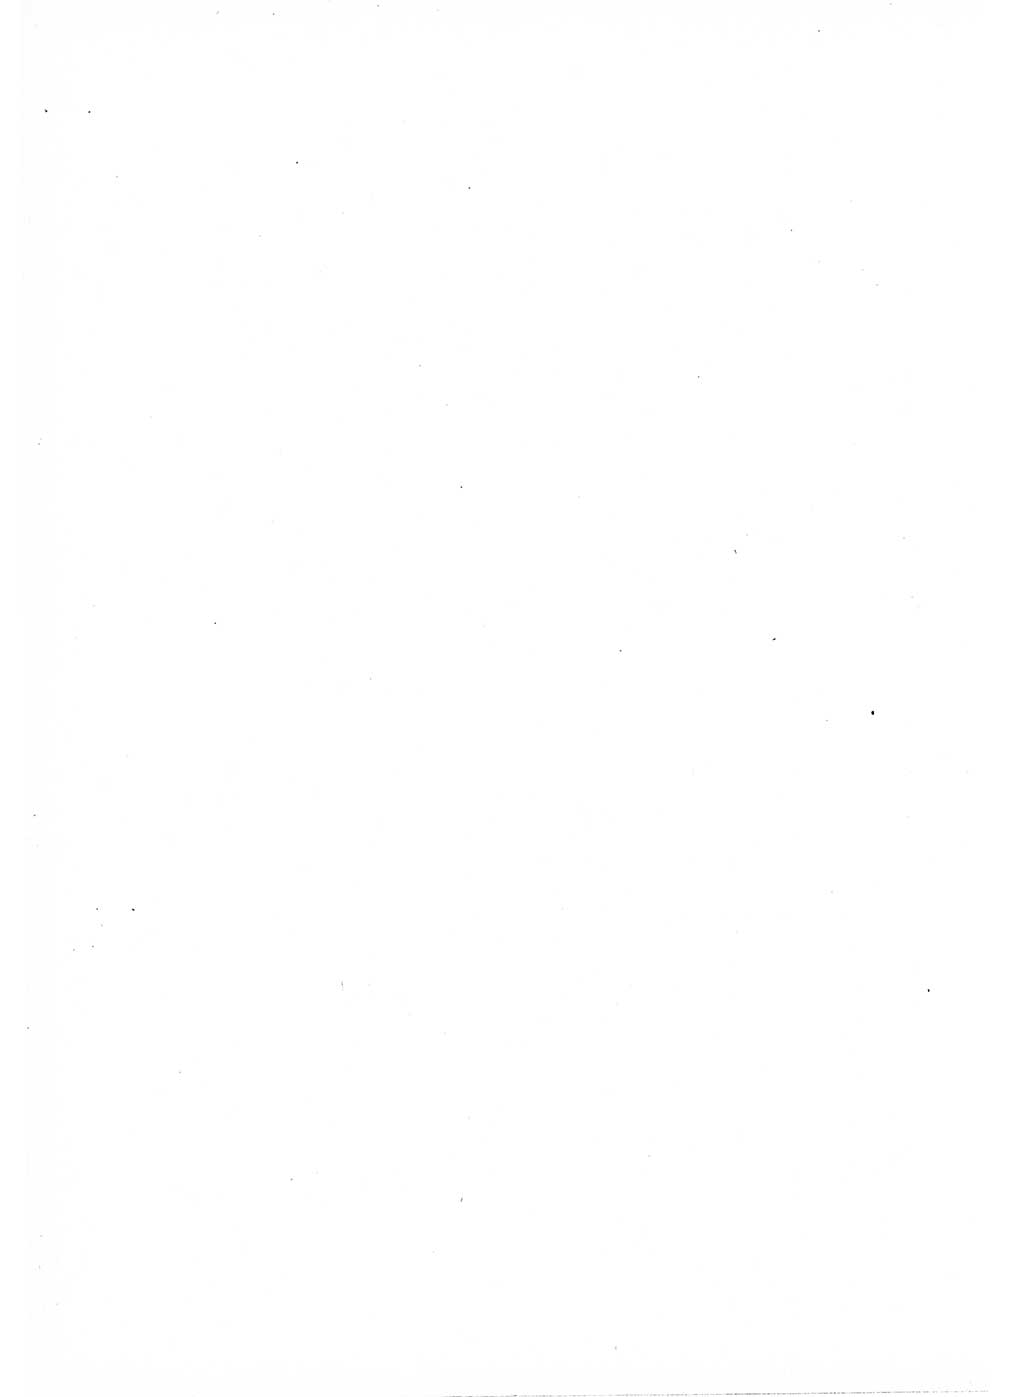 Strafrecht der Deutschen Demokratischen Republik (DDR), Lehrkommentar zum Strafgesetzbuch (StGB), Allgemeiner Teil 1969, Seite 300 (Strafr. DDR Lehrkomm. StGB AT 1969, S. 300)